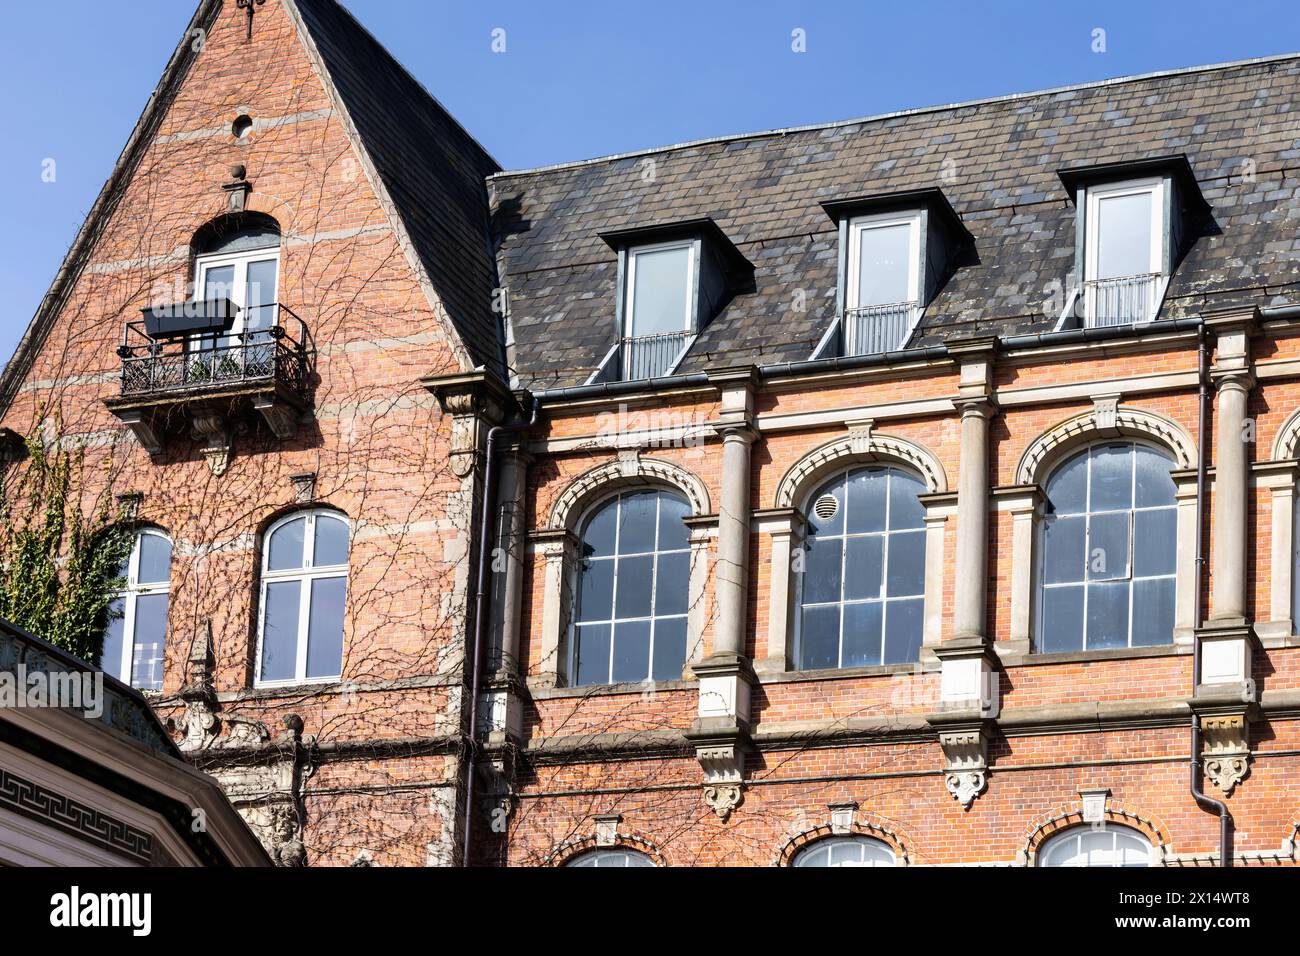 Antica casa tradizionale in mattoni rossi con grandi finestre. Copenaghen, Danimarca Foto Stock